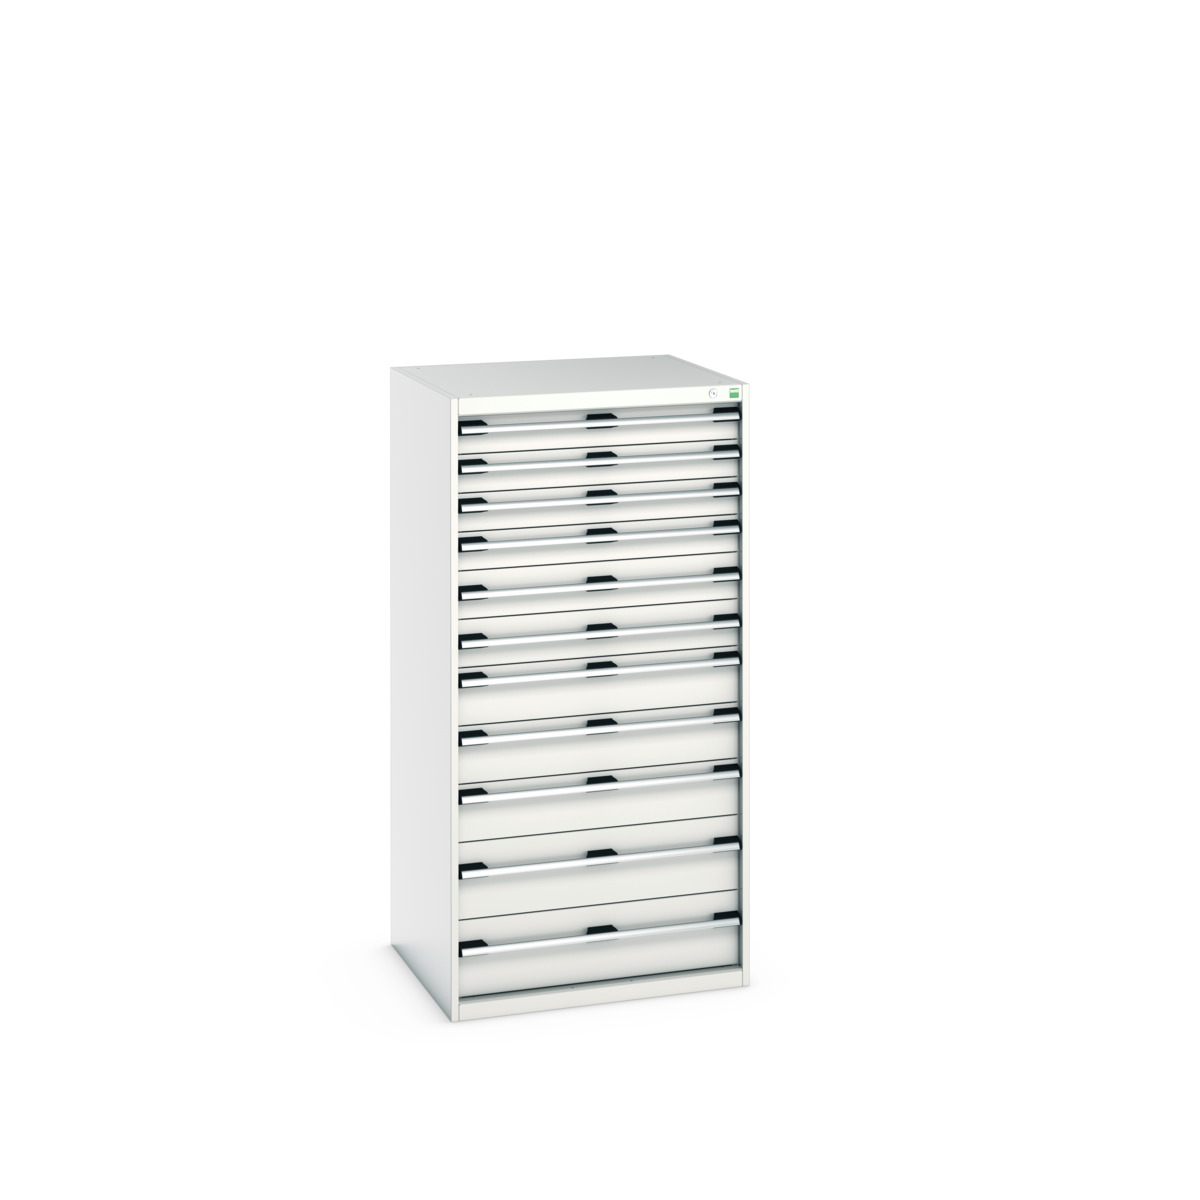 40028042.16V - cubio drawer cabinet